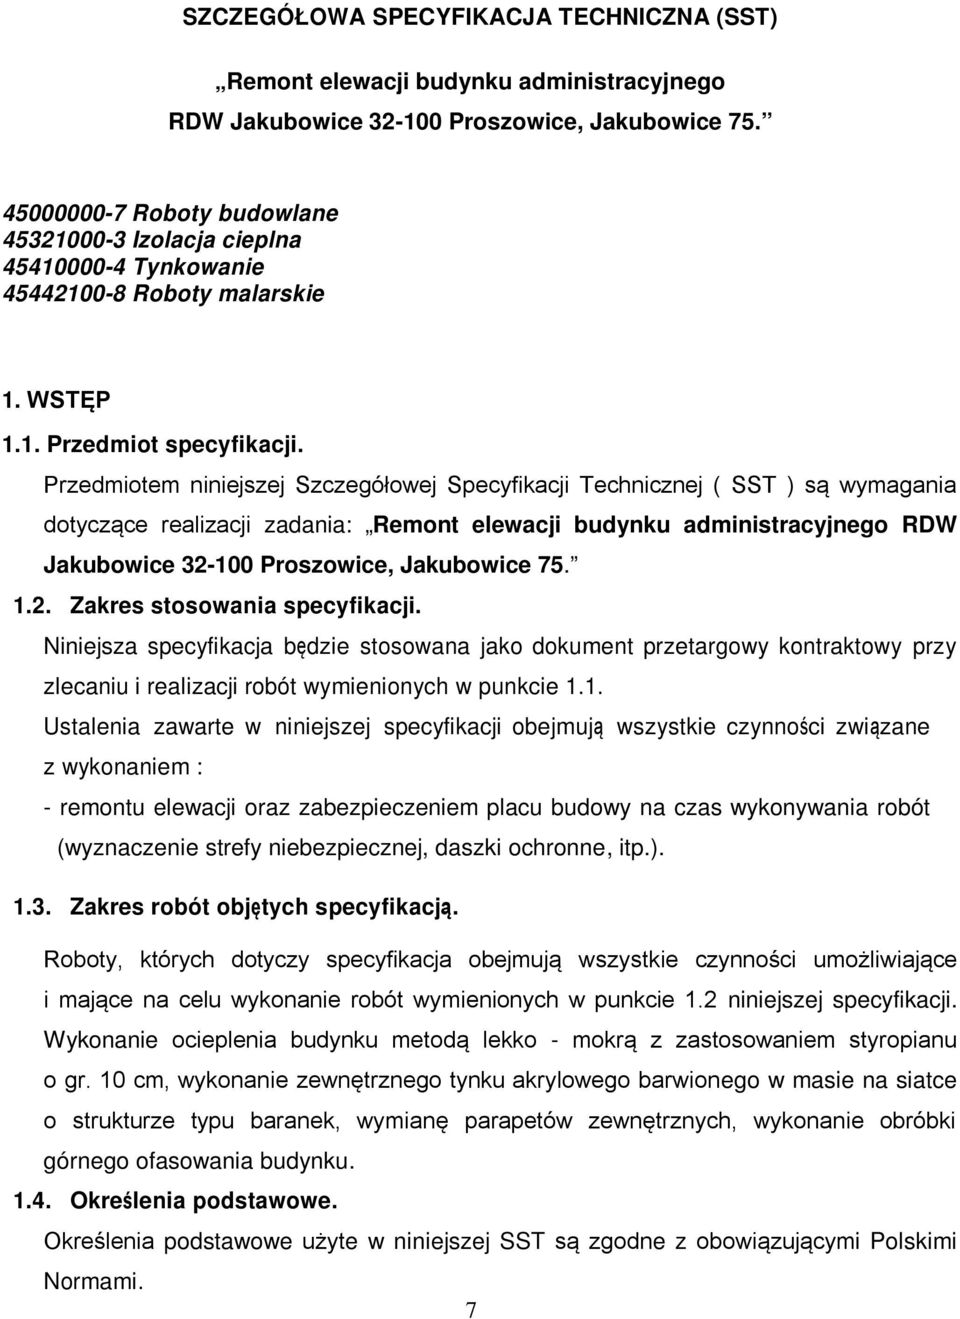 Przedmiotem niniejszej Szczegółowej Specyfikacji Technicznej ( SST ) są wymagania dotyczące realizacji zadania: Remont elewacji budynku administracyjnego RDW Jakubowice 32-100 Proszowice, Jakubowice